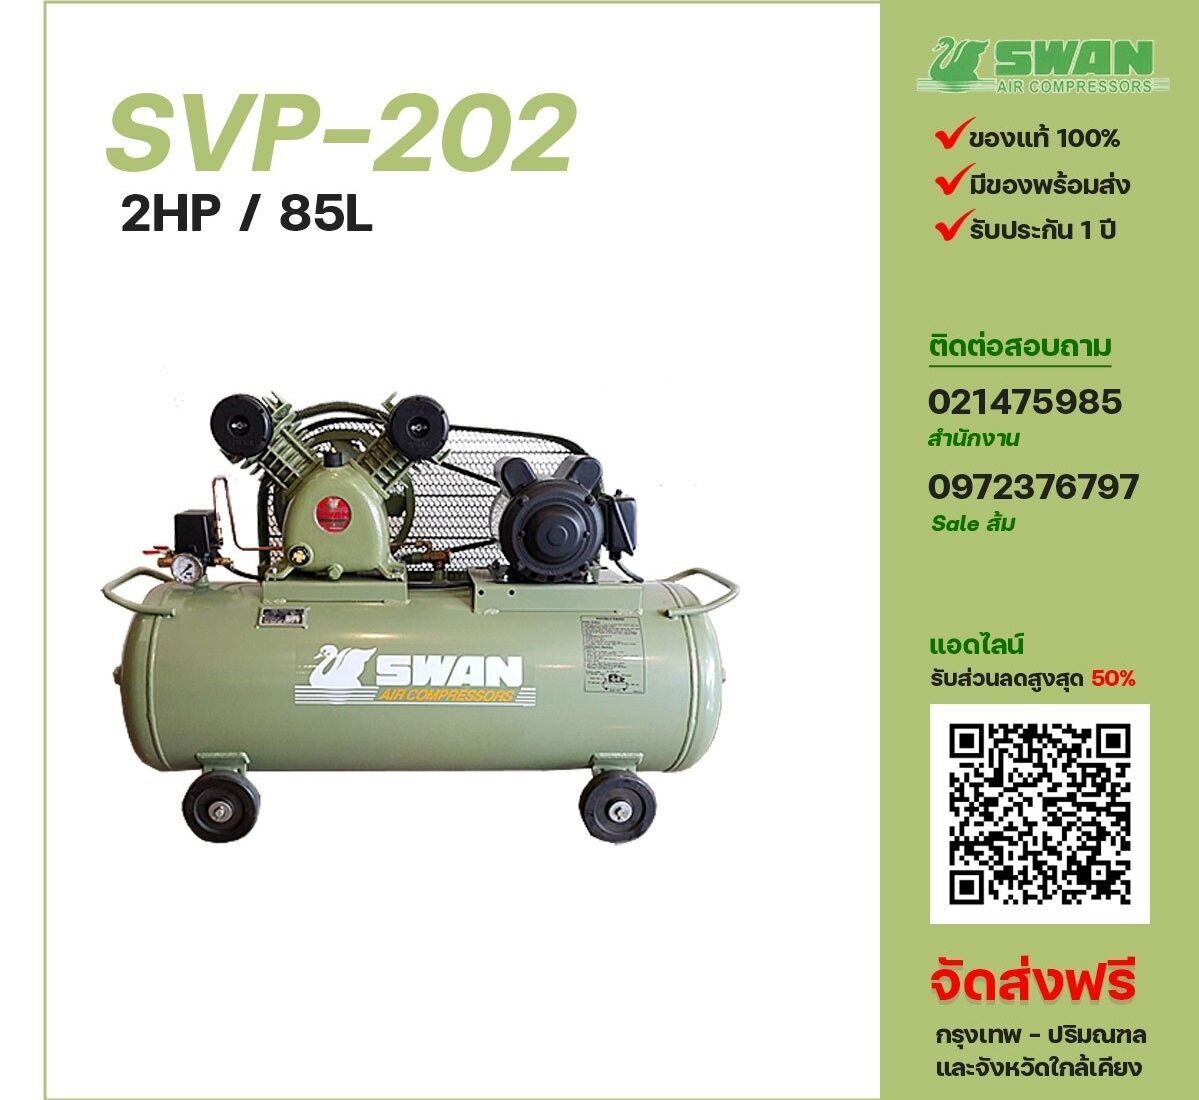 ปั๊มลมสวอน SWAN SVP-202 220V/380V ปั๊มลมลูกสูบ ขนาด 2 สูบ 2 แรงม้า 85 ลิตร SWAN พร้อมมอเตอร์ ไฟ 220V/380V ส่งฟรี กรุงเทพฯ-ปริมณฑล รับประกัน 1 ปี